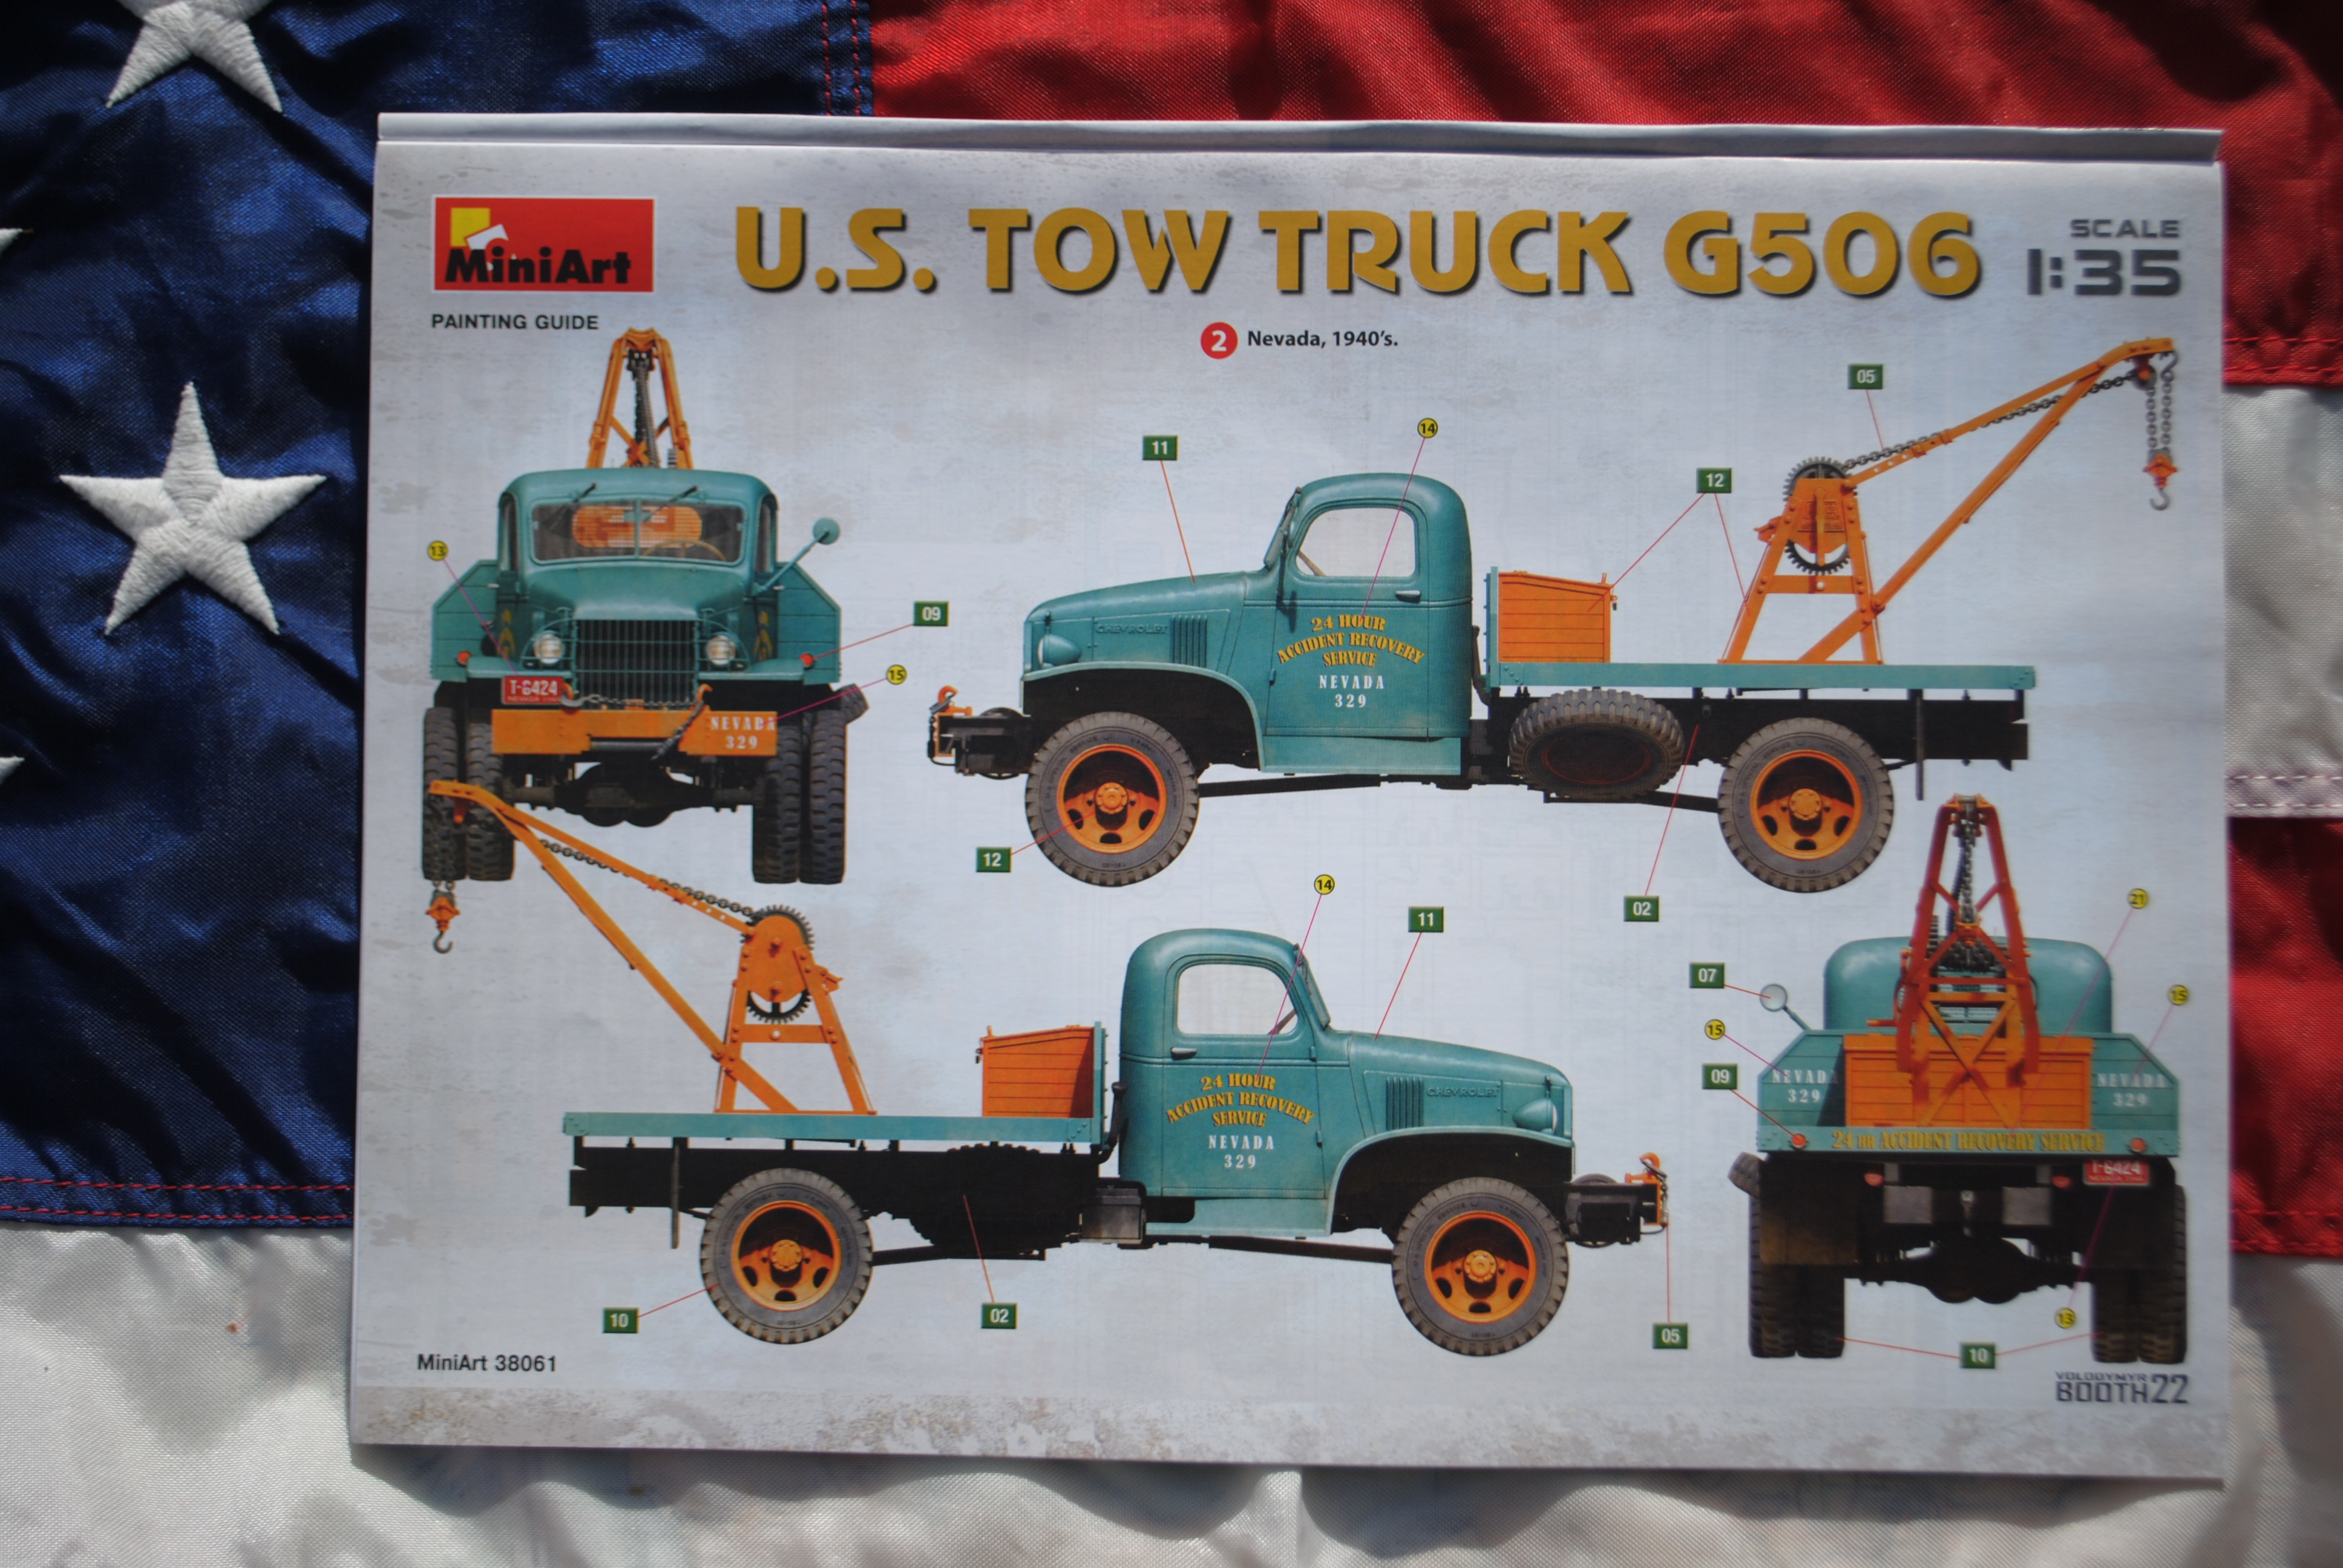 Mini Art 38061 U.S. Tow Truck Chevrolet G506